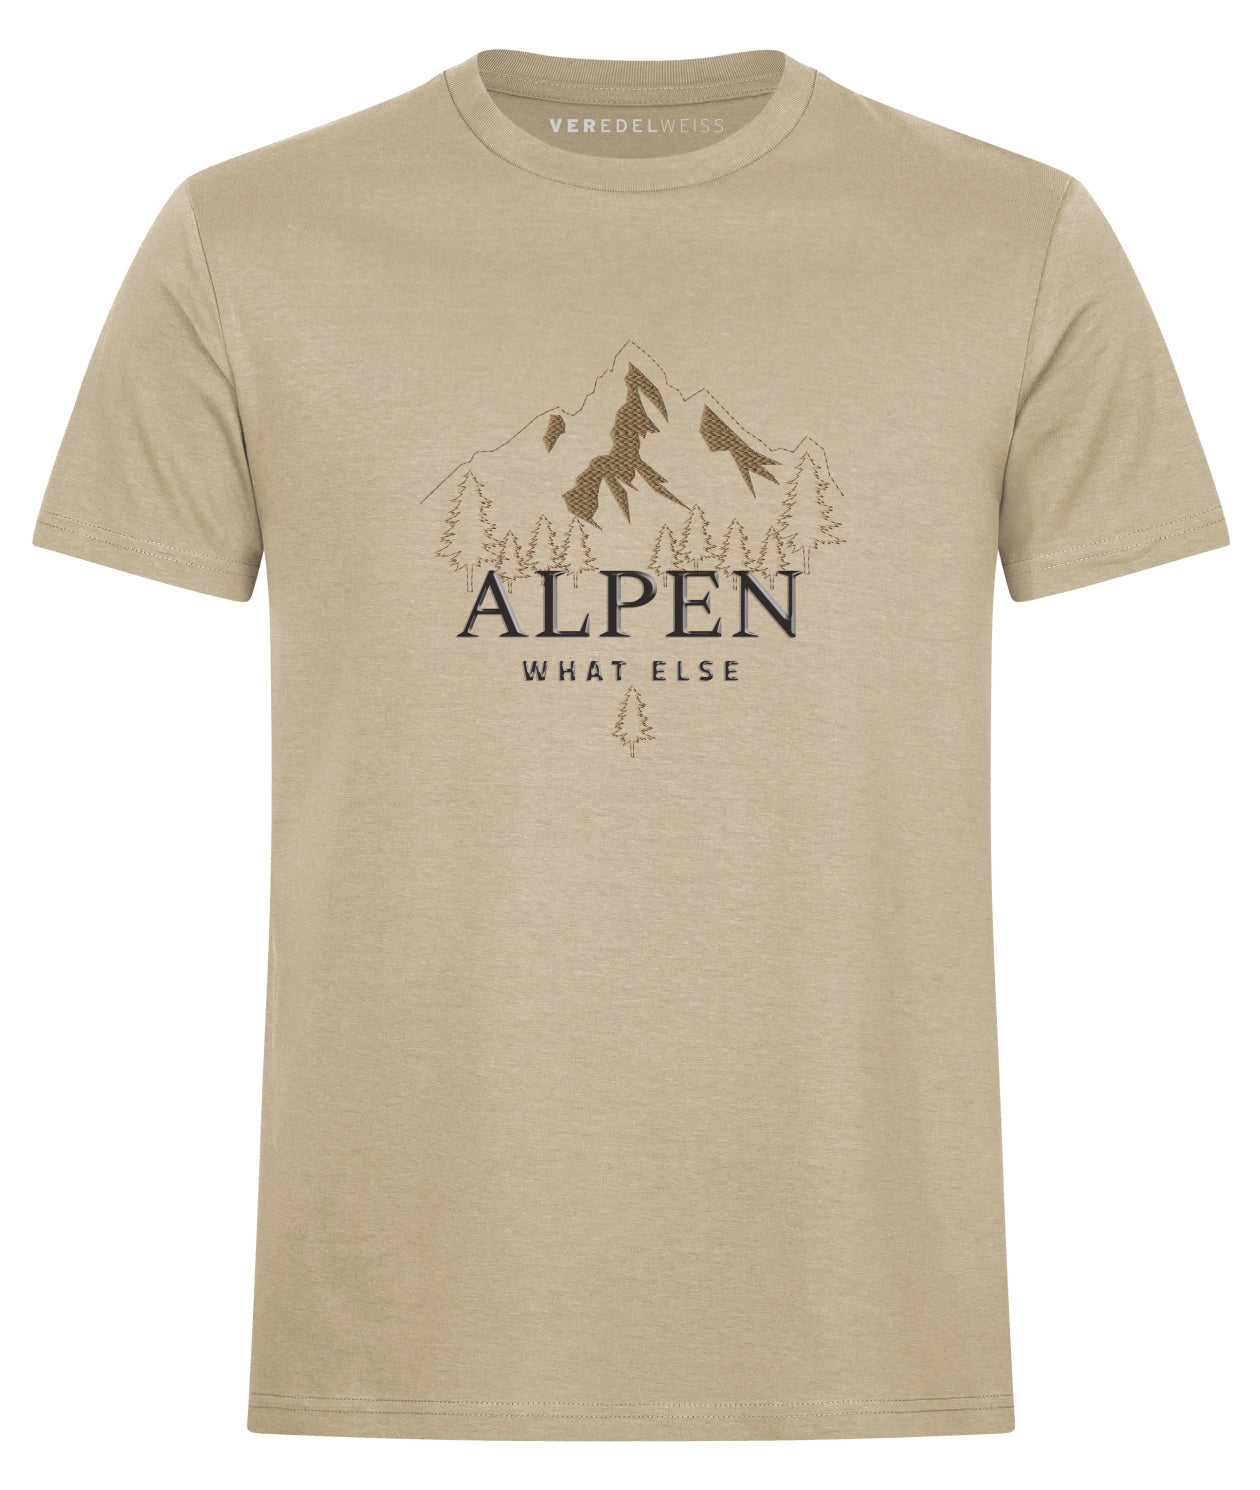 Alpen - What Else (Herren/Unisex) Alpen - What Else (Herren/Unisex)